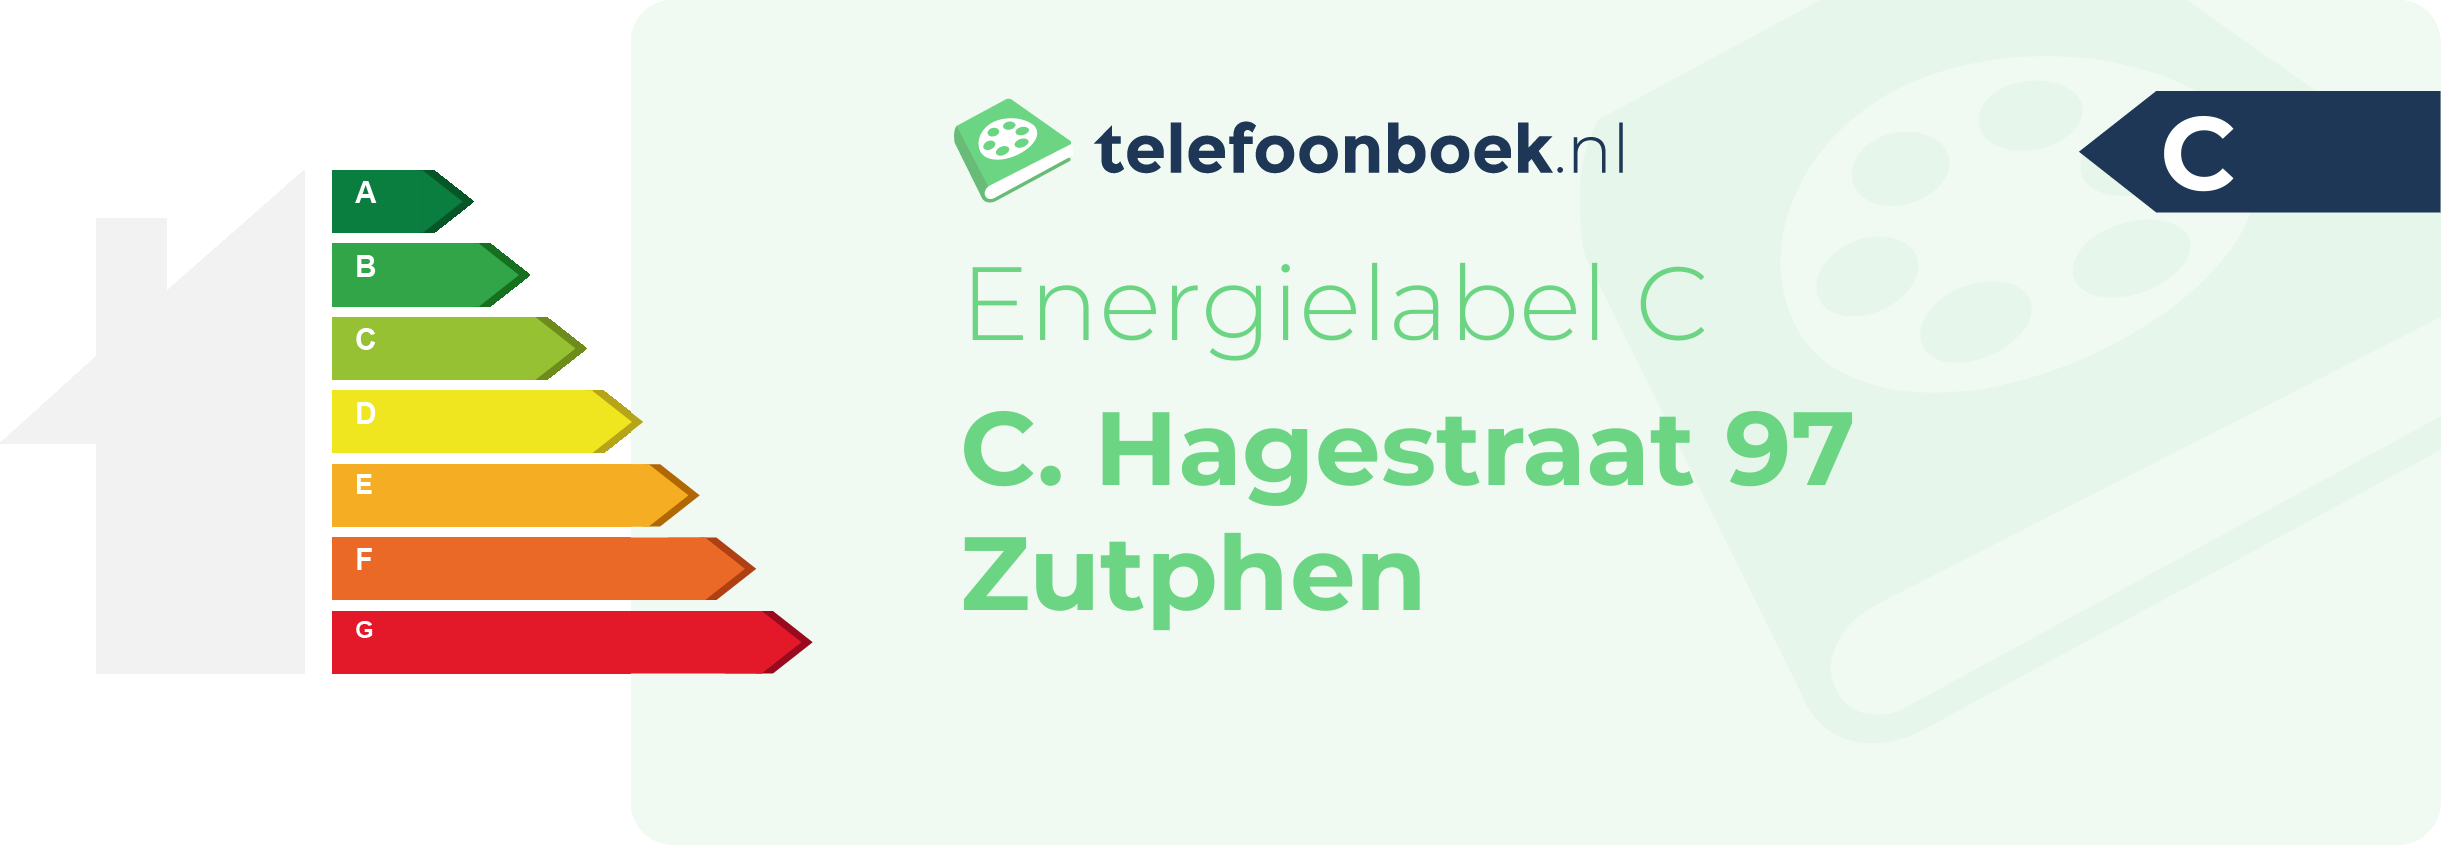 Energielabel C. Hagestraat 97 Zutphen